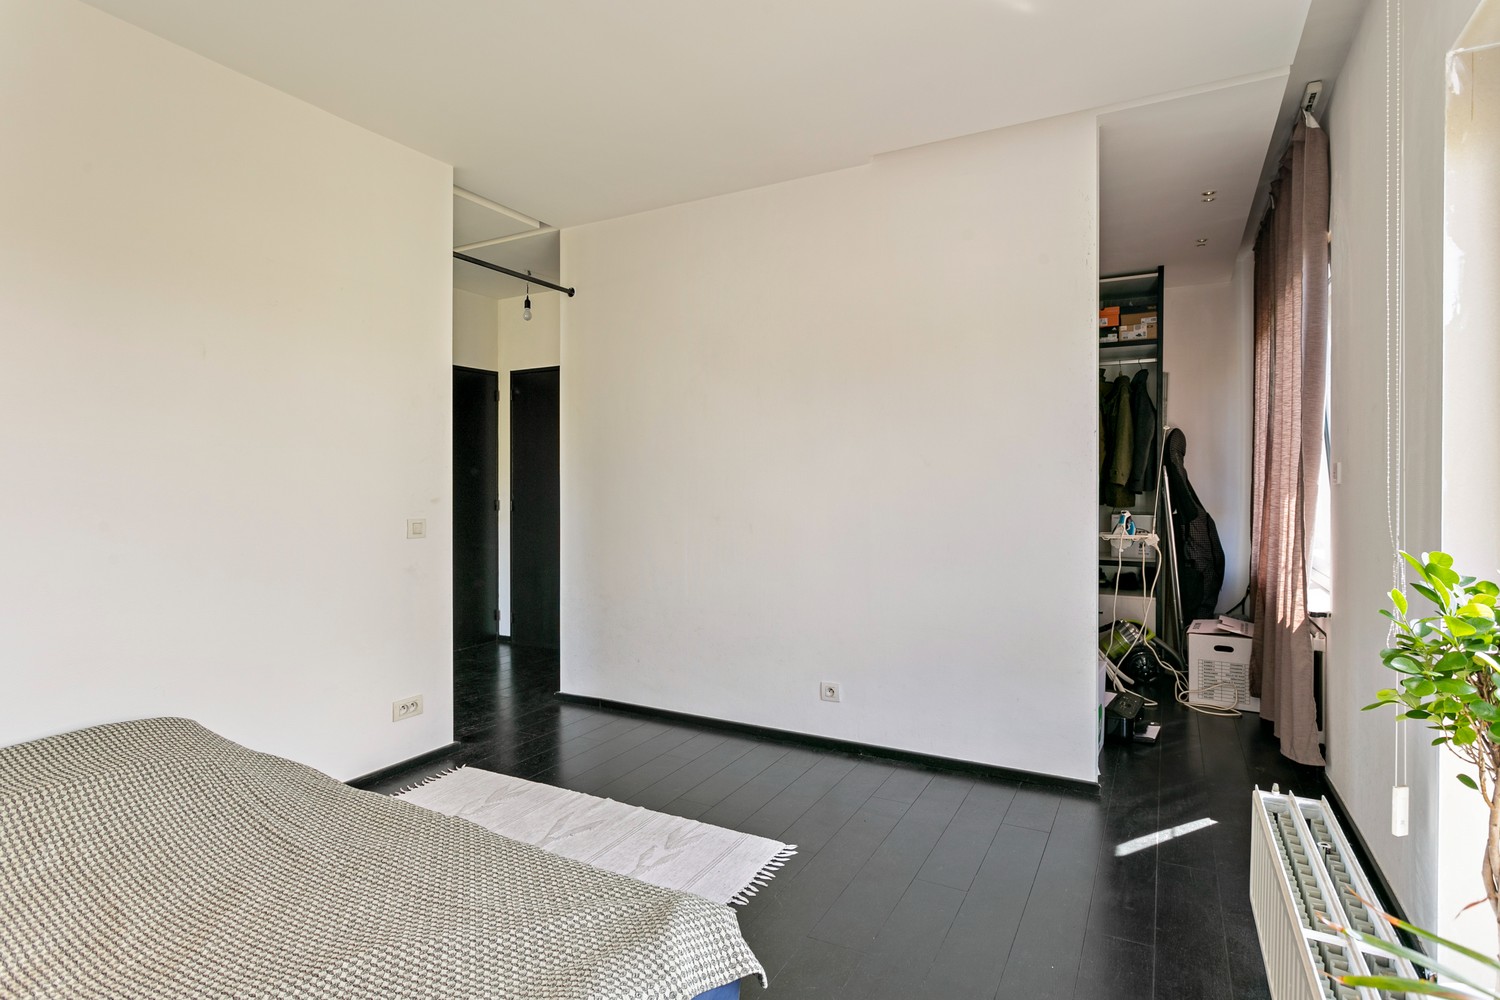 Ruim, lichtrijk appartement op ± 90m² met garage in Edegem! afbeelding 12